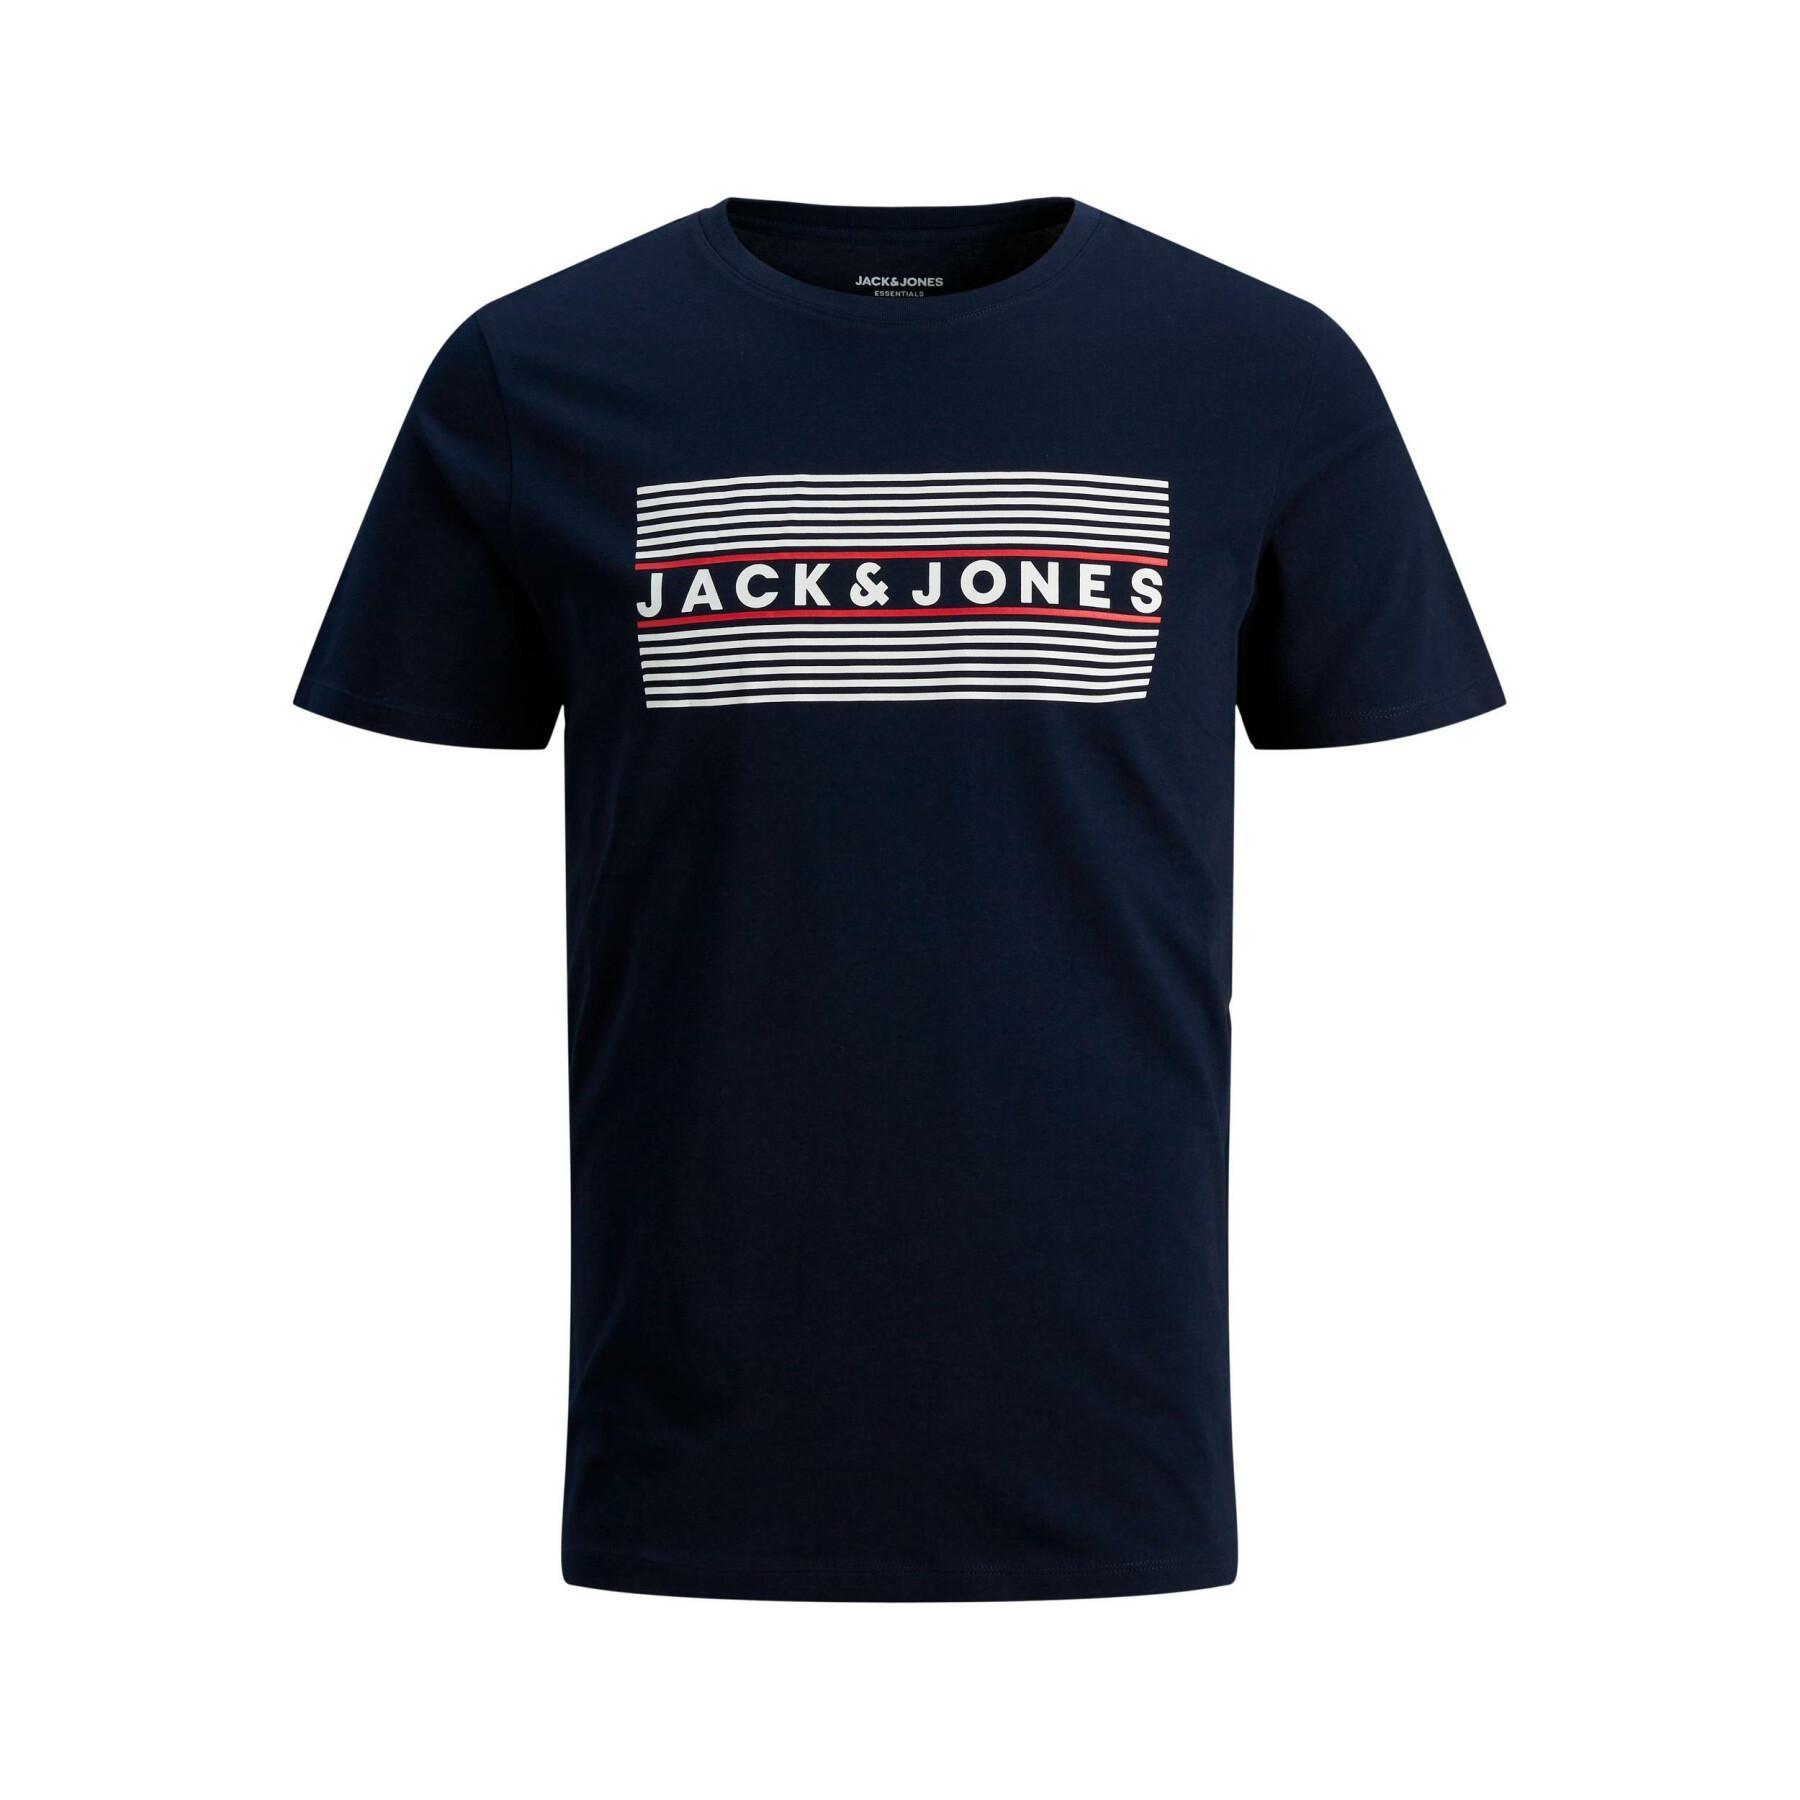 Camiseta para niños Jack & Jones corp logo